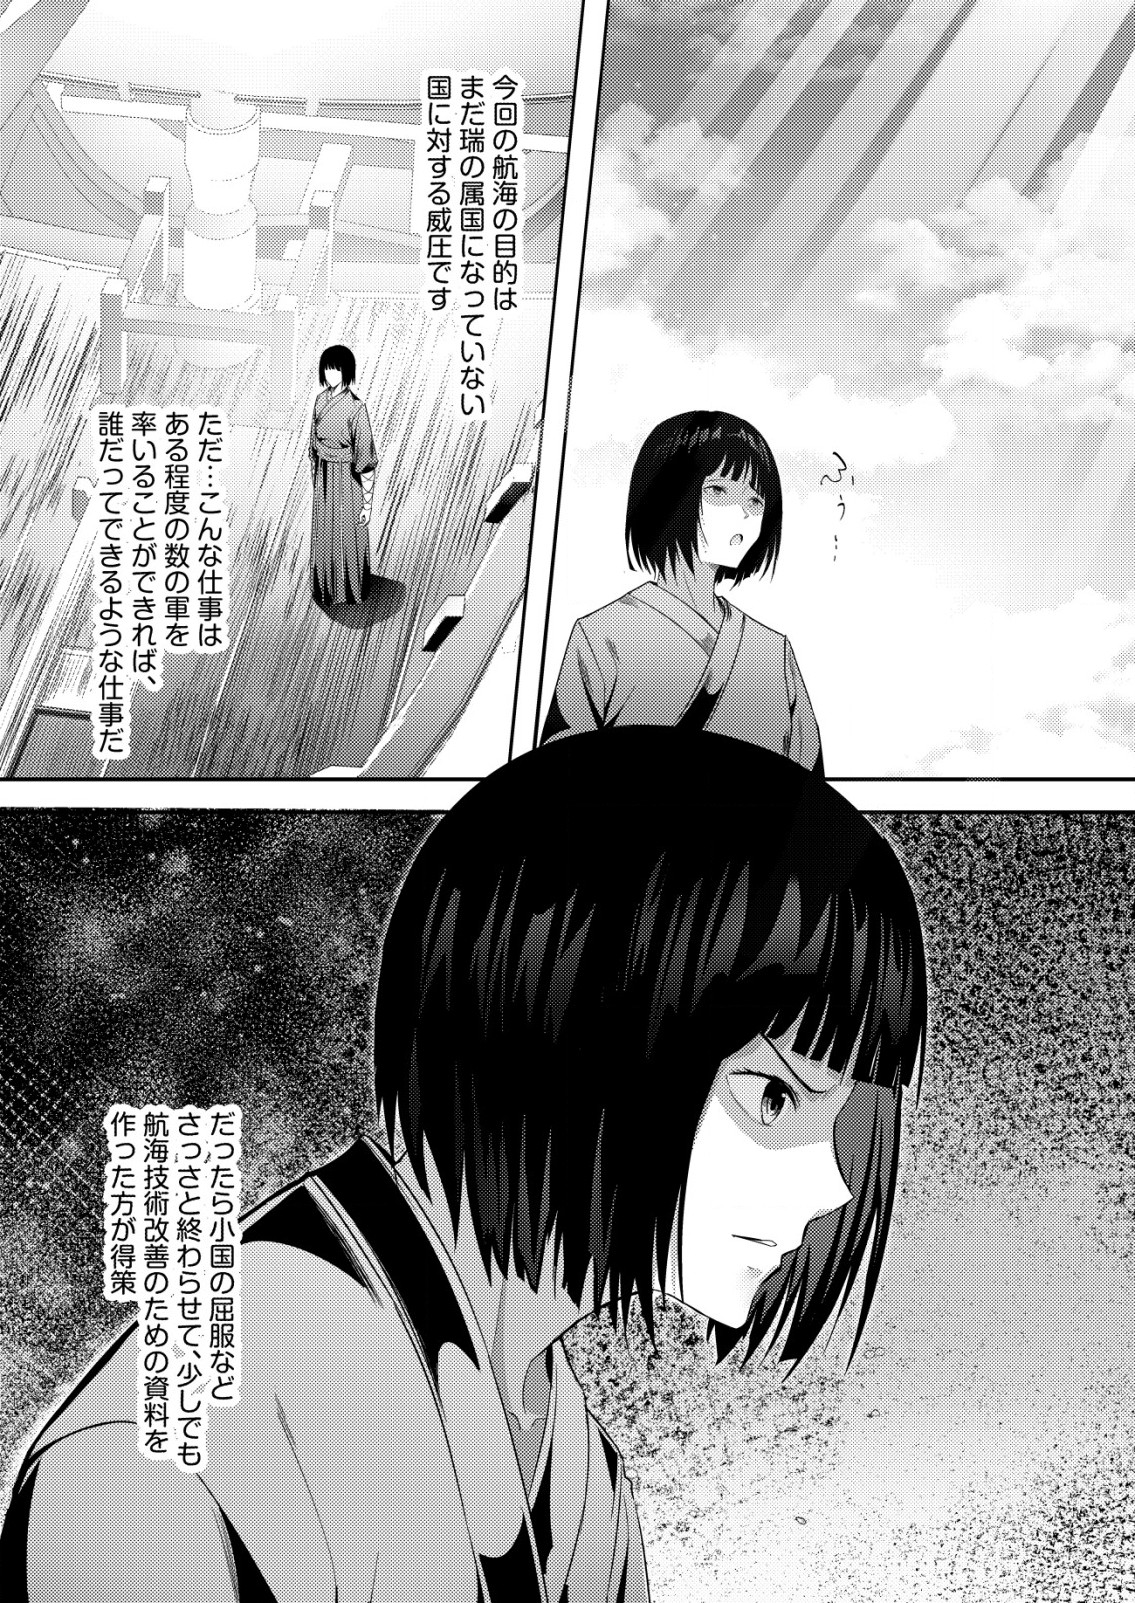 Isekai De kenja No Ishi To Yoba Rete Imasu - Chapter 21 - Page 2